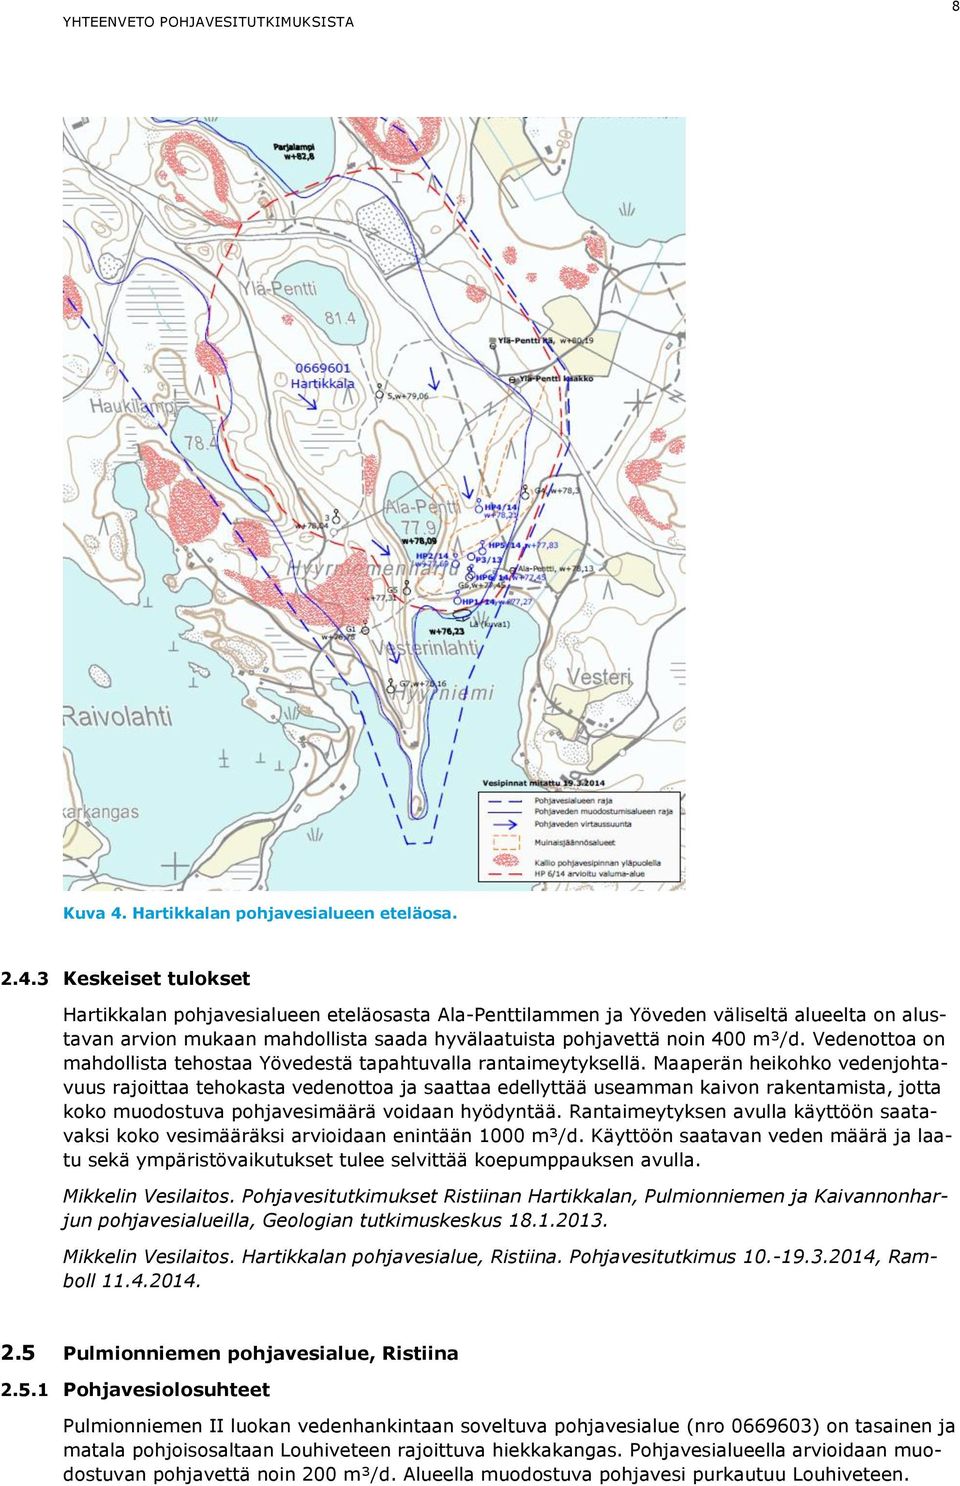 3 Keskeiset tulokset Hartikkalan pohjavesialueen eteläosasta Ala-Penttilammen ja Yöveden väliseltä alueelta on alustavan arvion mukaan mahdollista saada hyvälaatuista pohjavettä noin 400 m³/d.